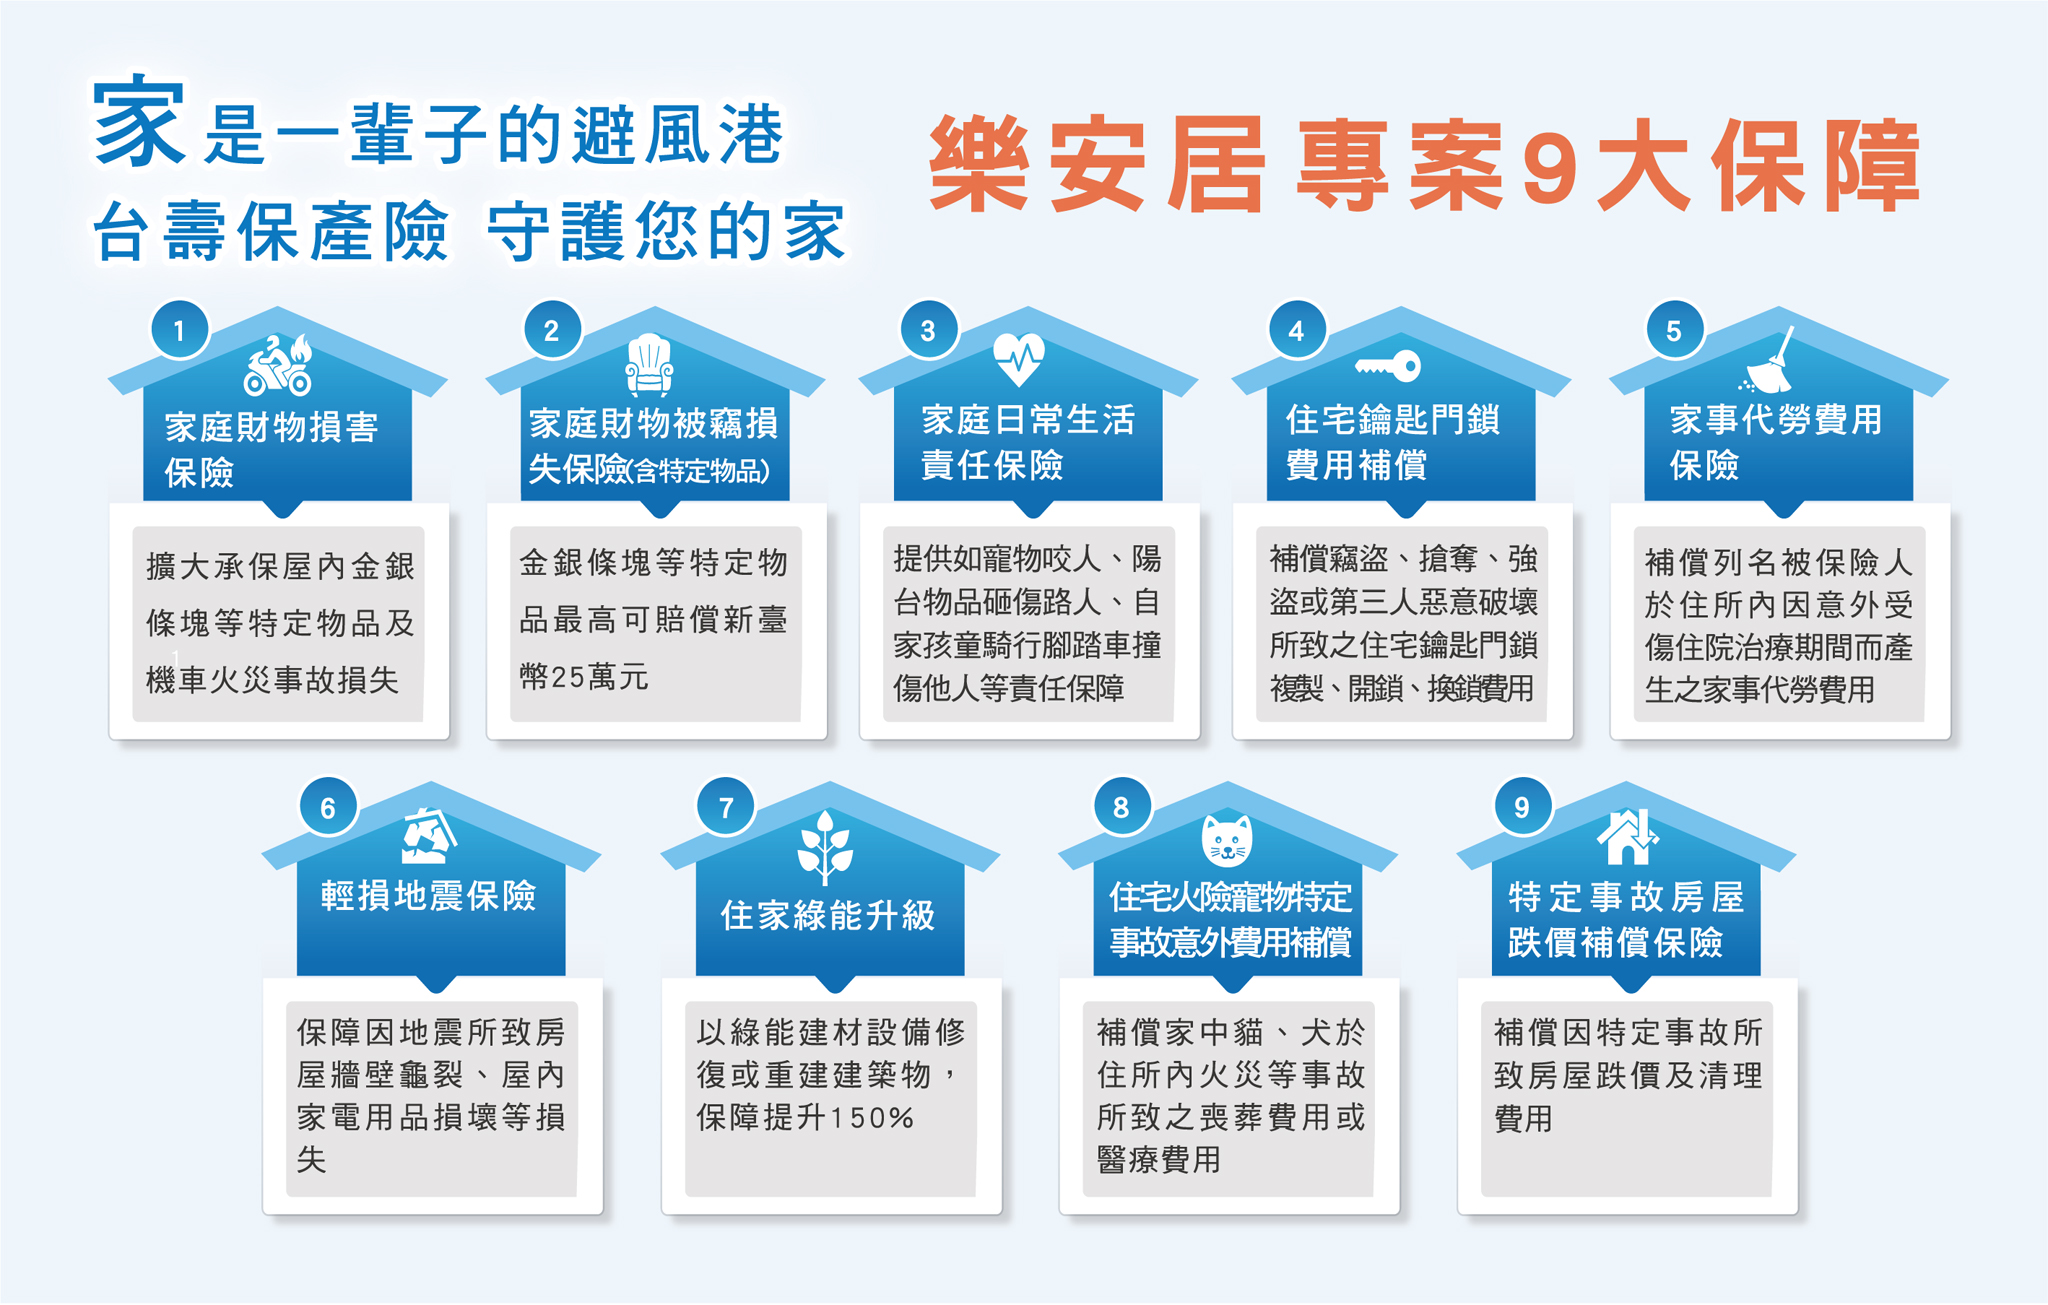 台壽保產險推出的「樂安居家庭綜合保險專案」提供九大保障。